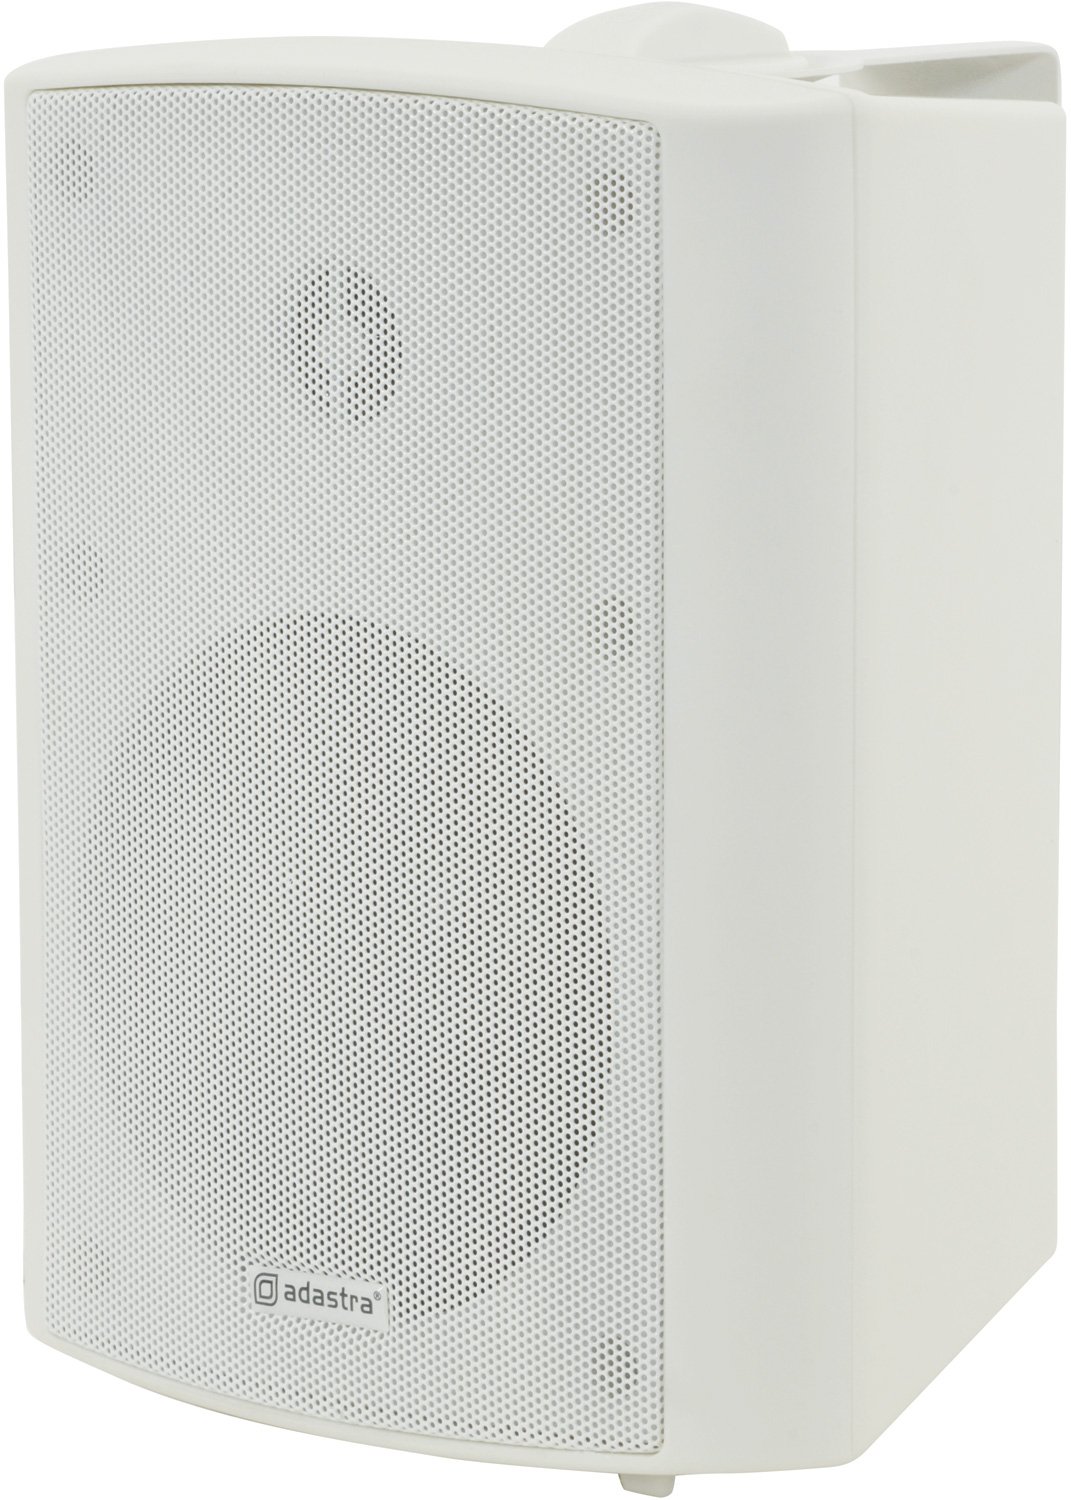 BP Series - 100V Weatherproof Speakers BP5V-W 100V 5.25" background speaker white